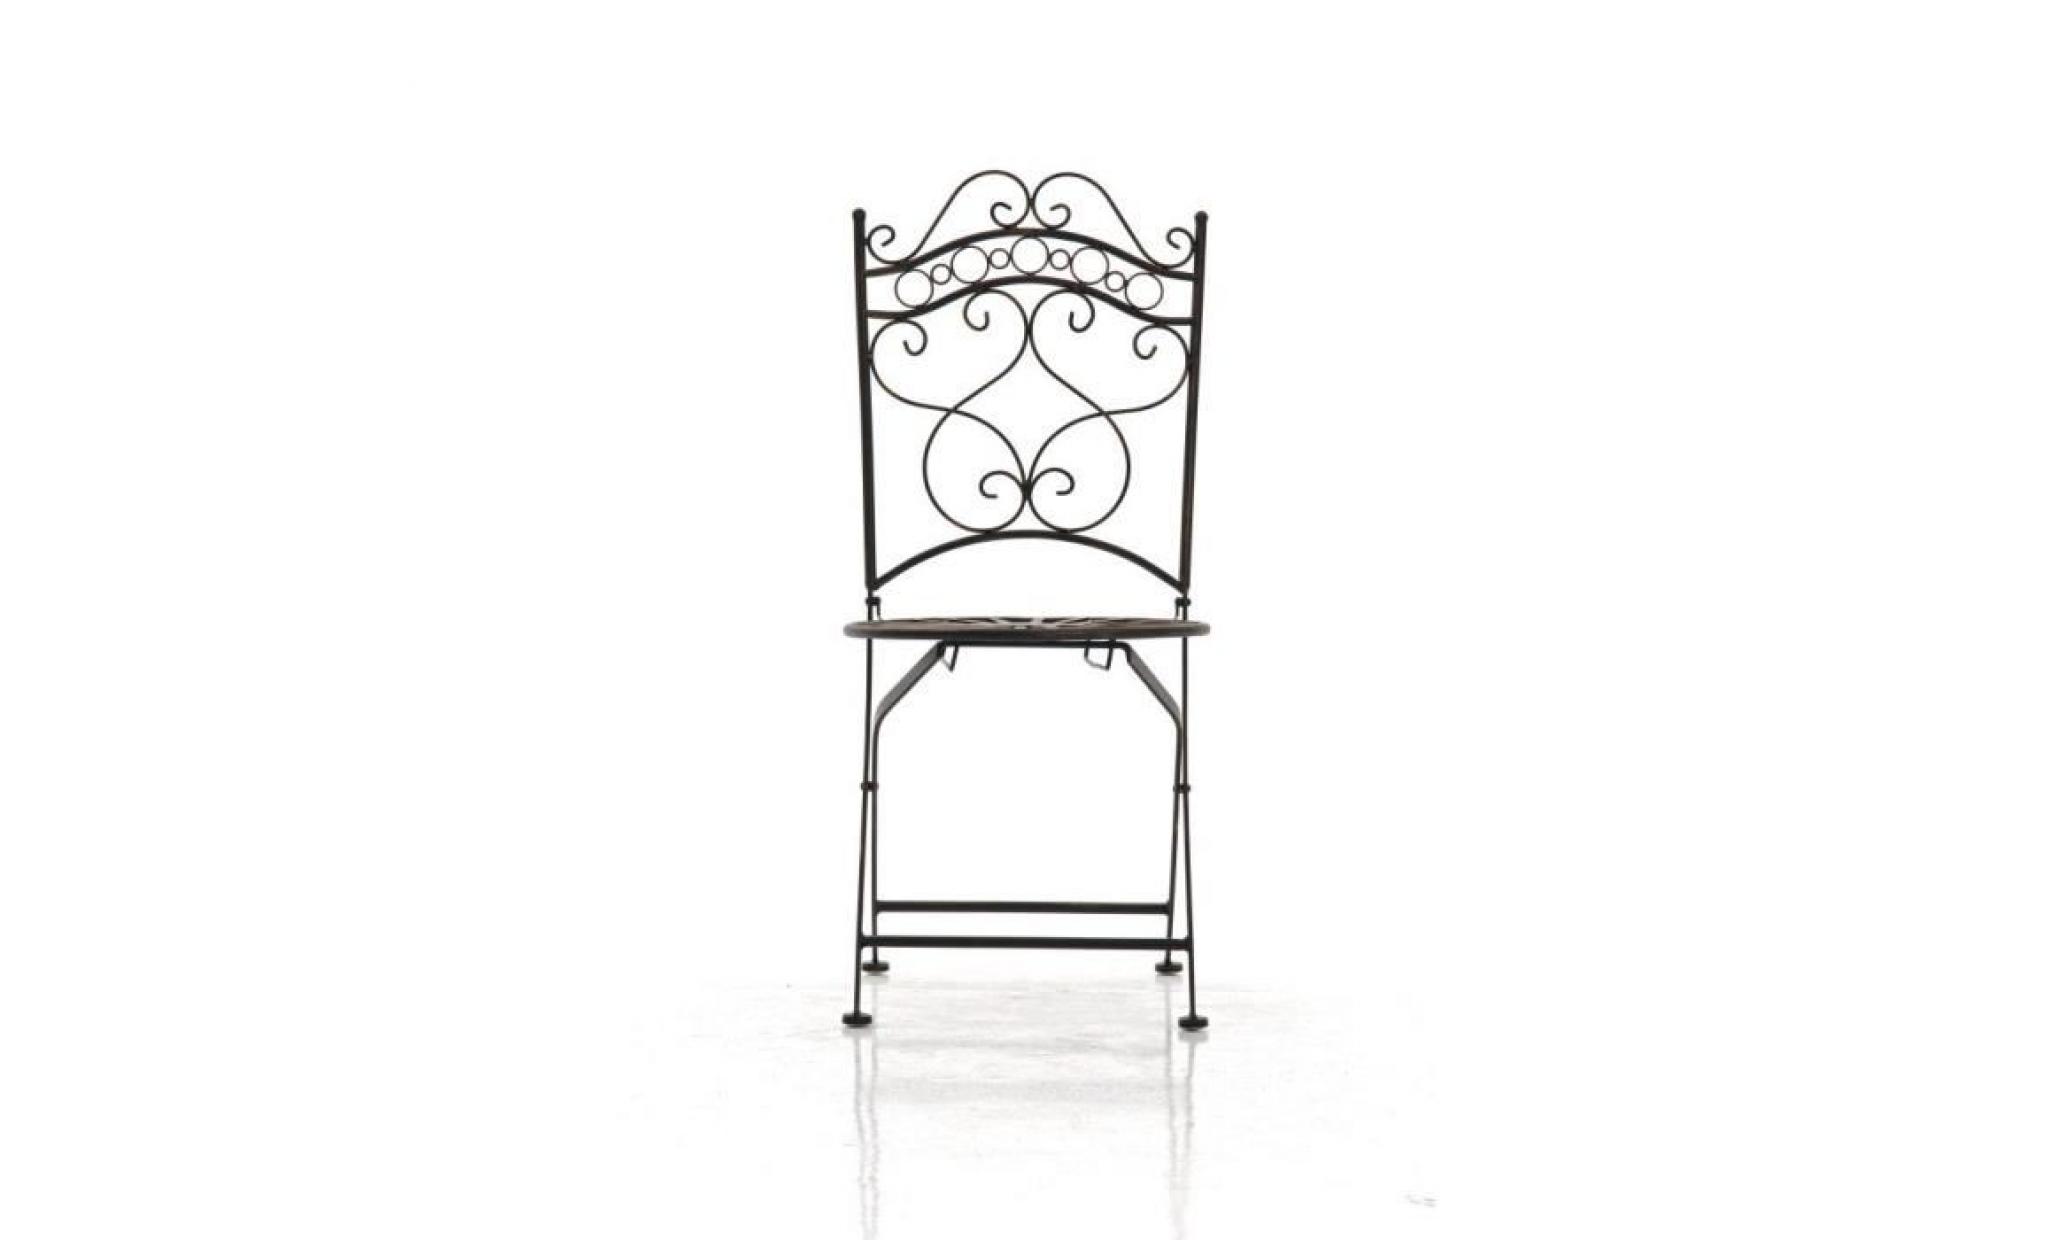 clp chaise nostalgique pliable indra, en fer forgé, chaise en fer style nostalgique, ultra élégant, 6 couleurs au choix92 cm   pas cher